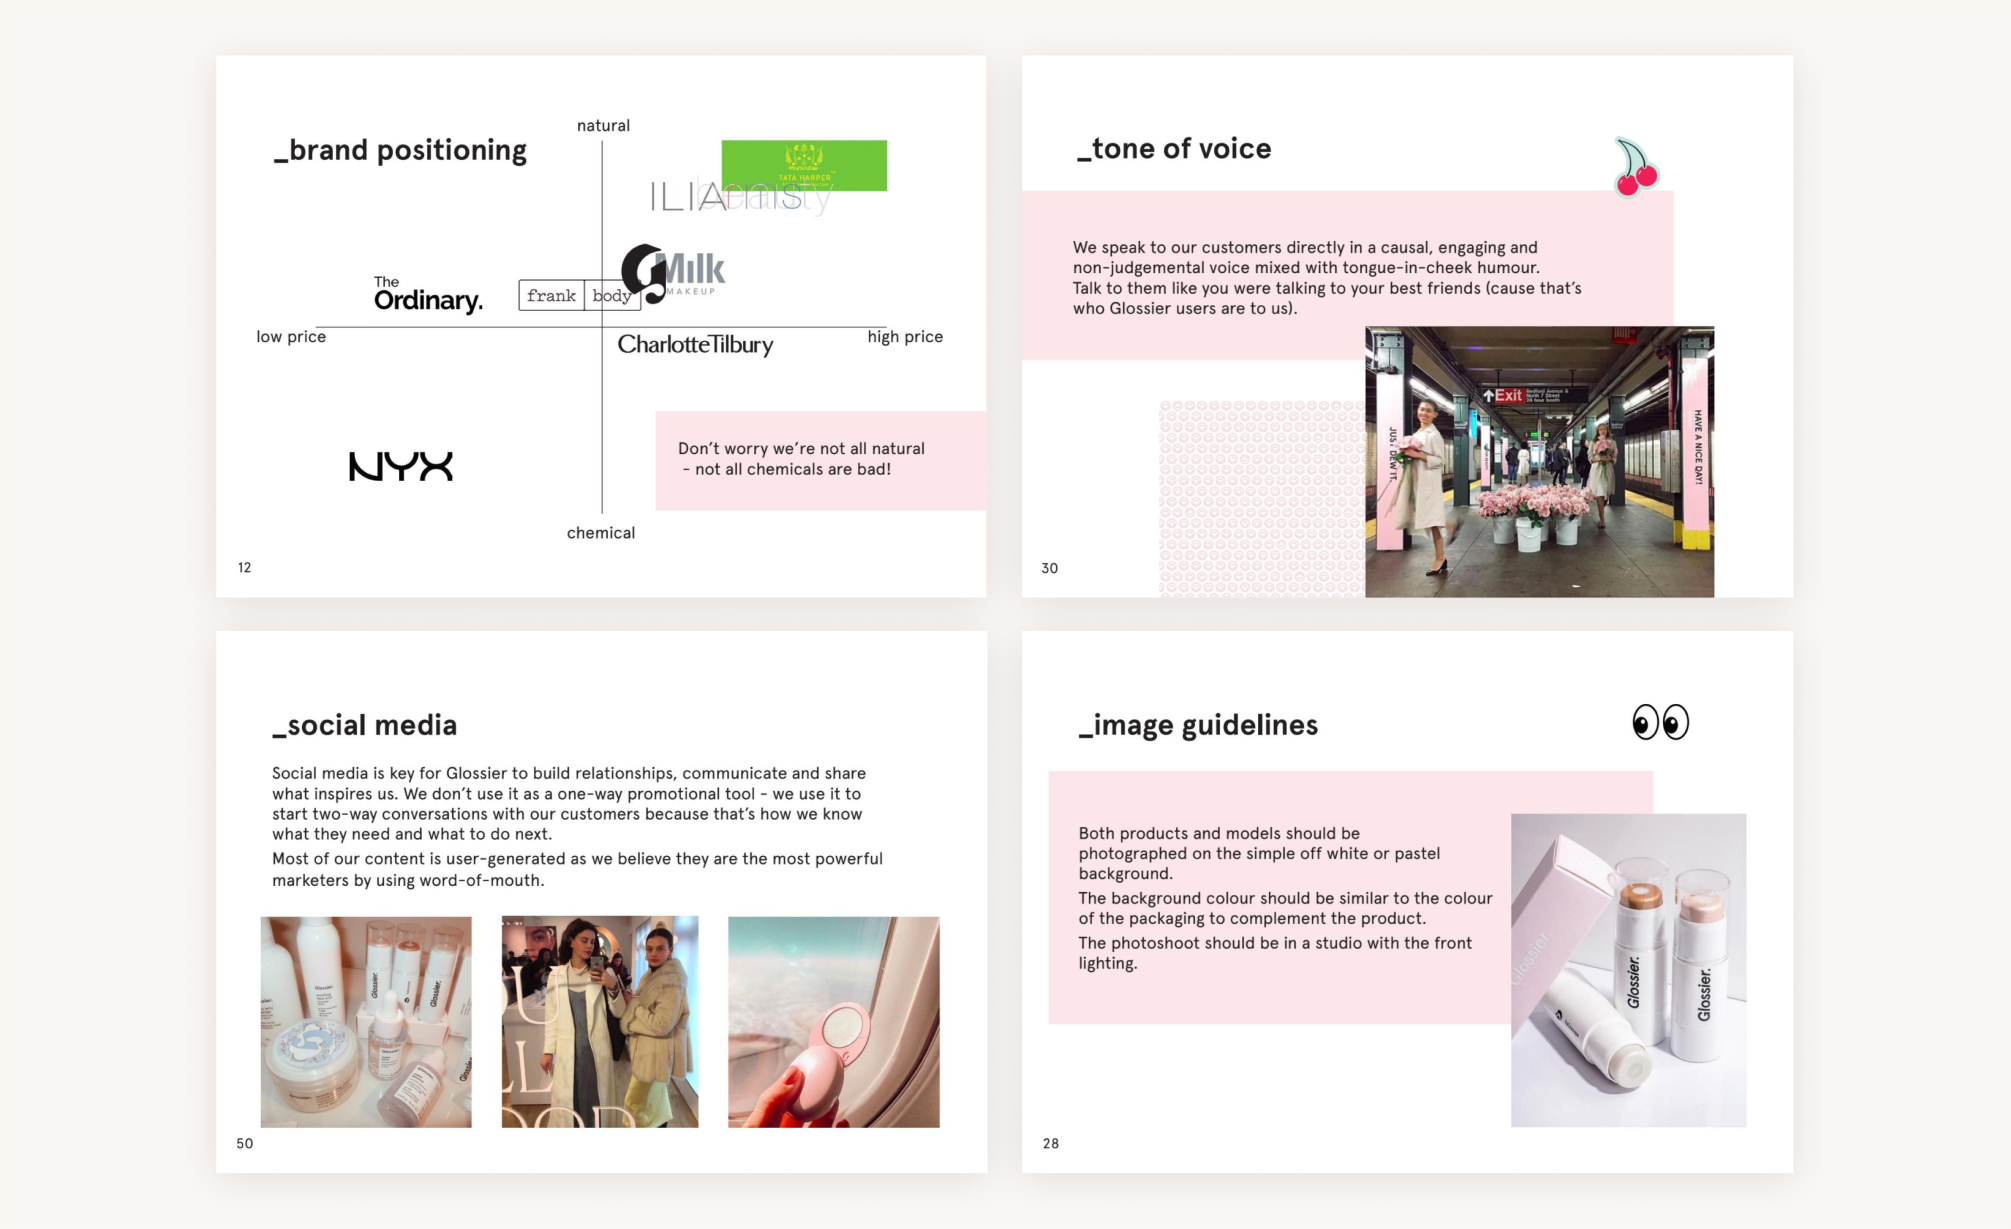 Wybrane strony z brandbooka Glossier. Opisują one komunikację i język marki, wytyczne do zdjęć oraz pozycjonowanie firmy względem innych firm z branży beauty.